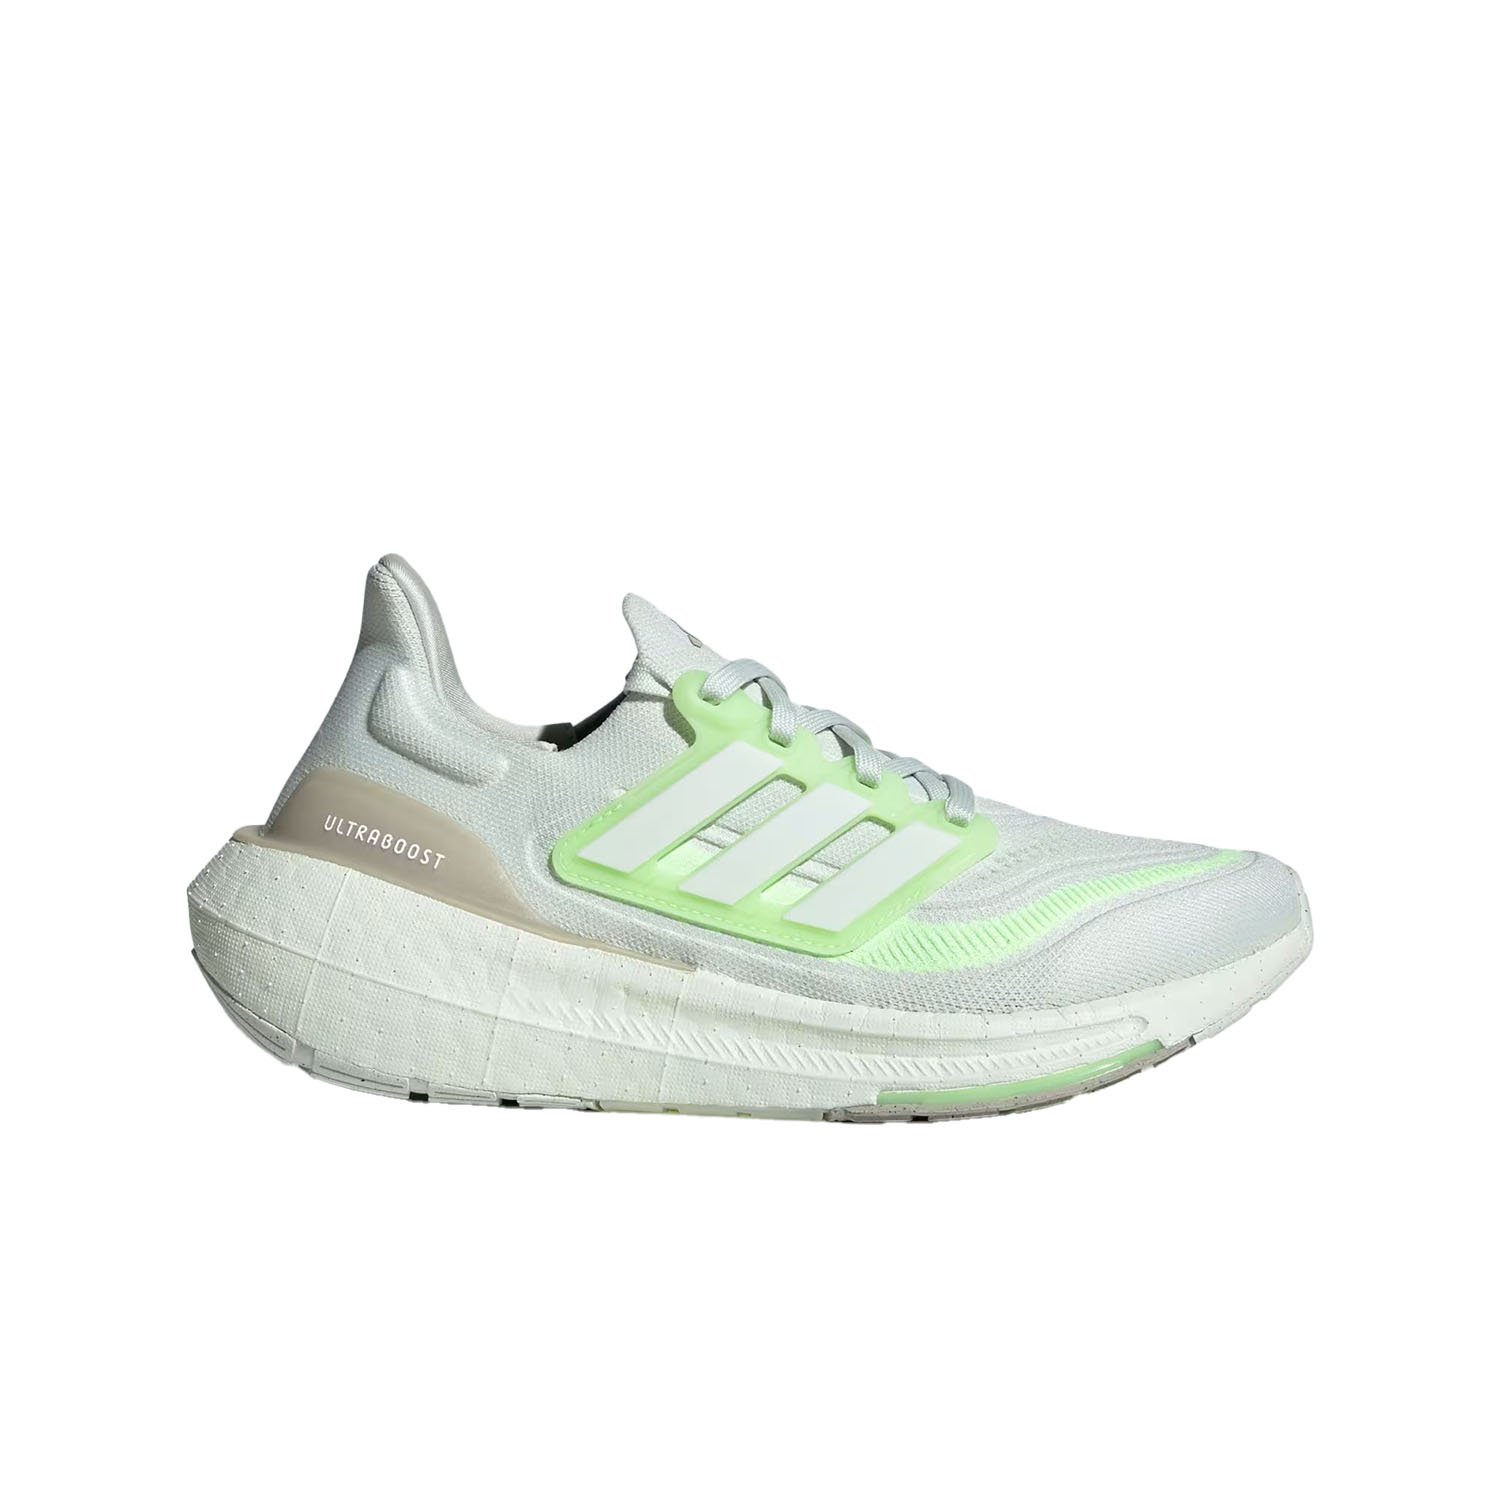 Adidas Ultraboost Light Kadın Yol Koşu Ayakkabısı - Renkli - 1